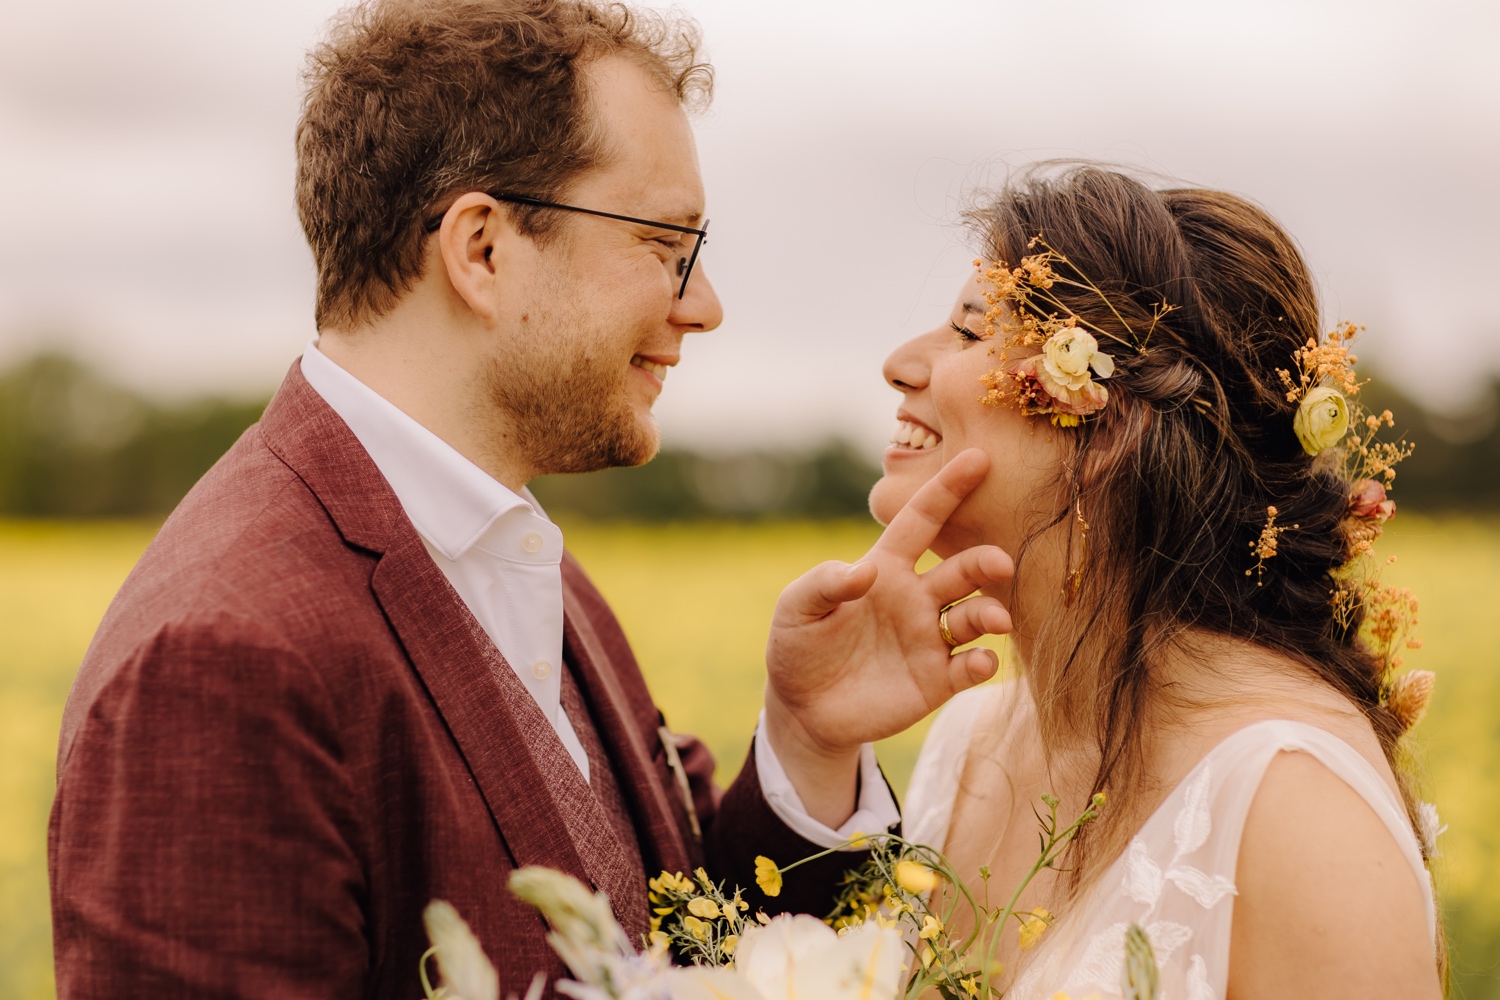 Huwelijksfotograaf Limburg - bruidspaar kijkt elkaar innig aan tijdens fotoshoot